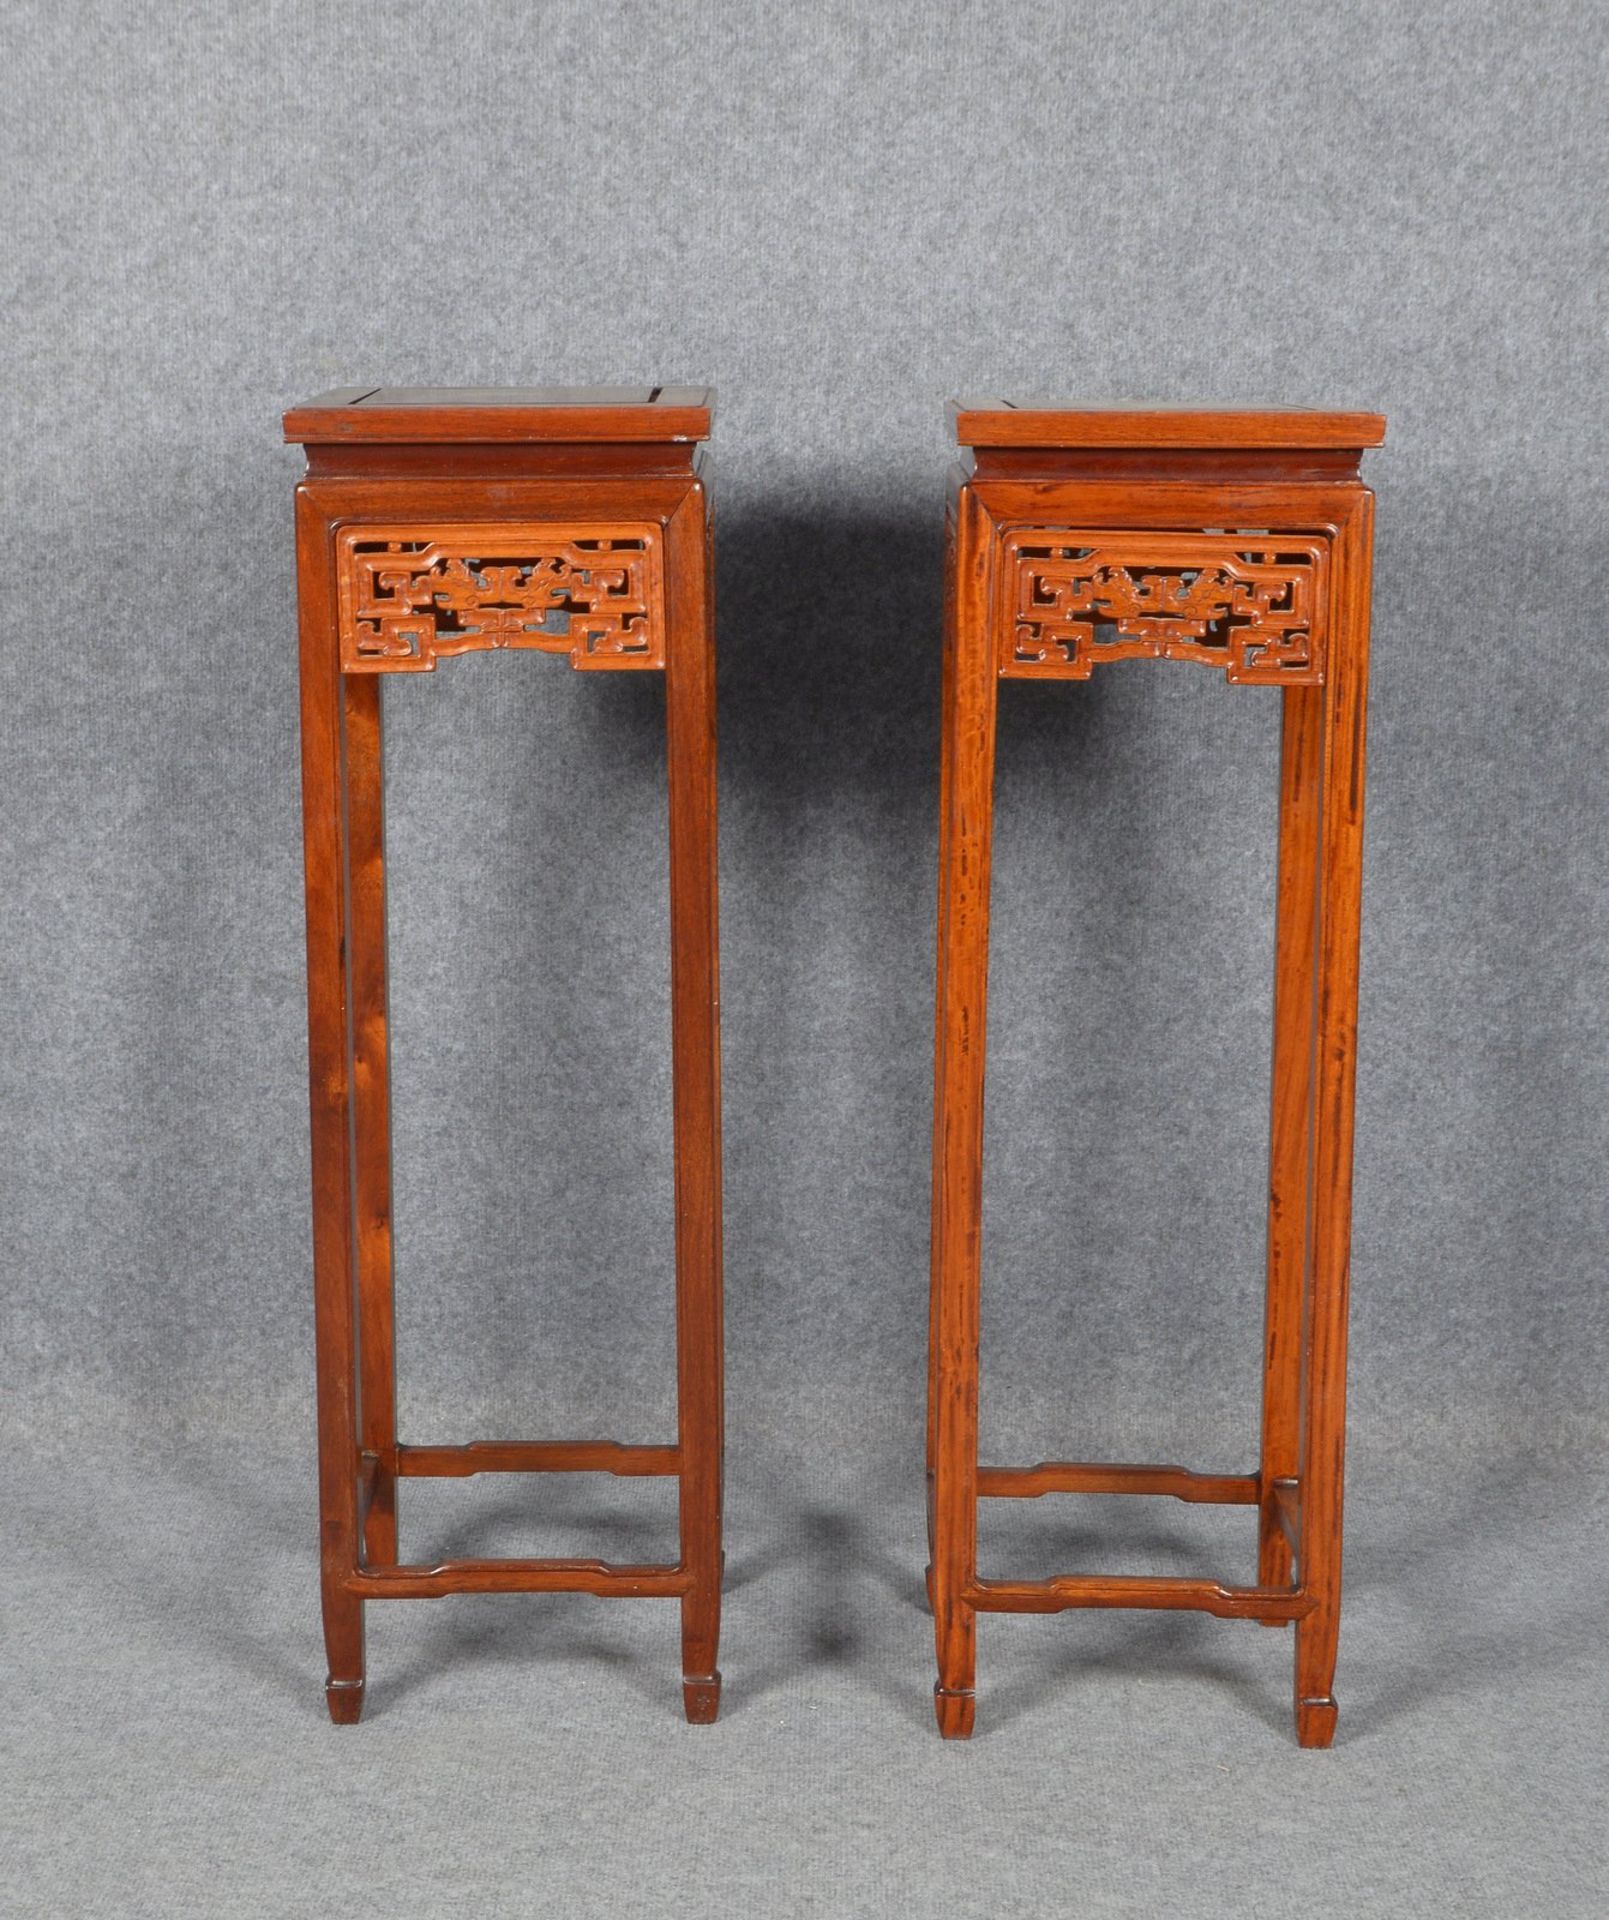 Paar Beistelltische (China), Mahagoni, quadrat. Zarge, auf hohen schlanken Beine - Bild 2 aus 2